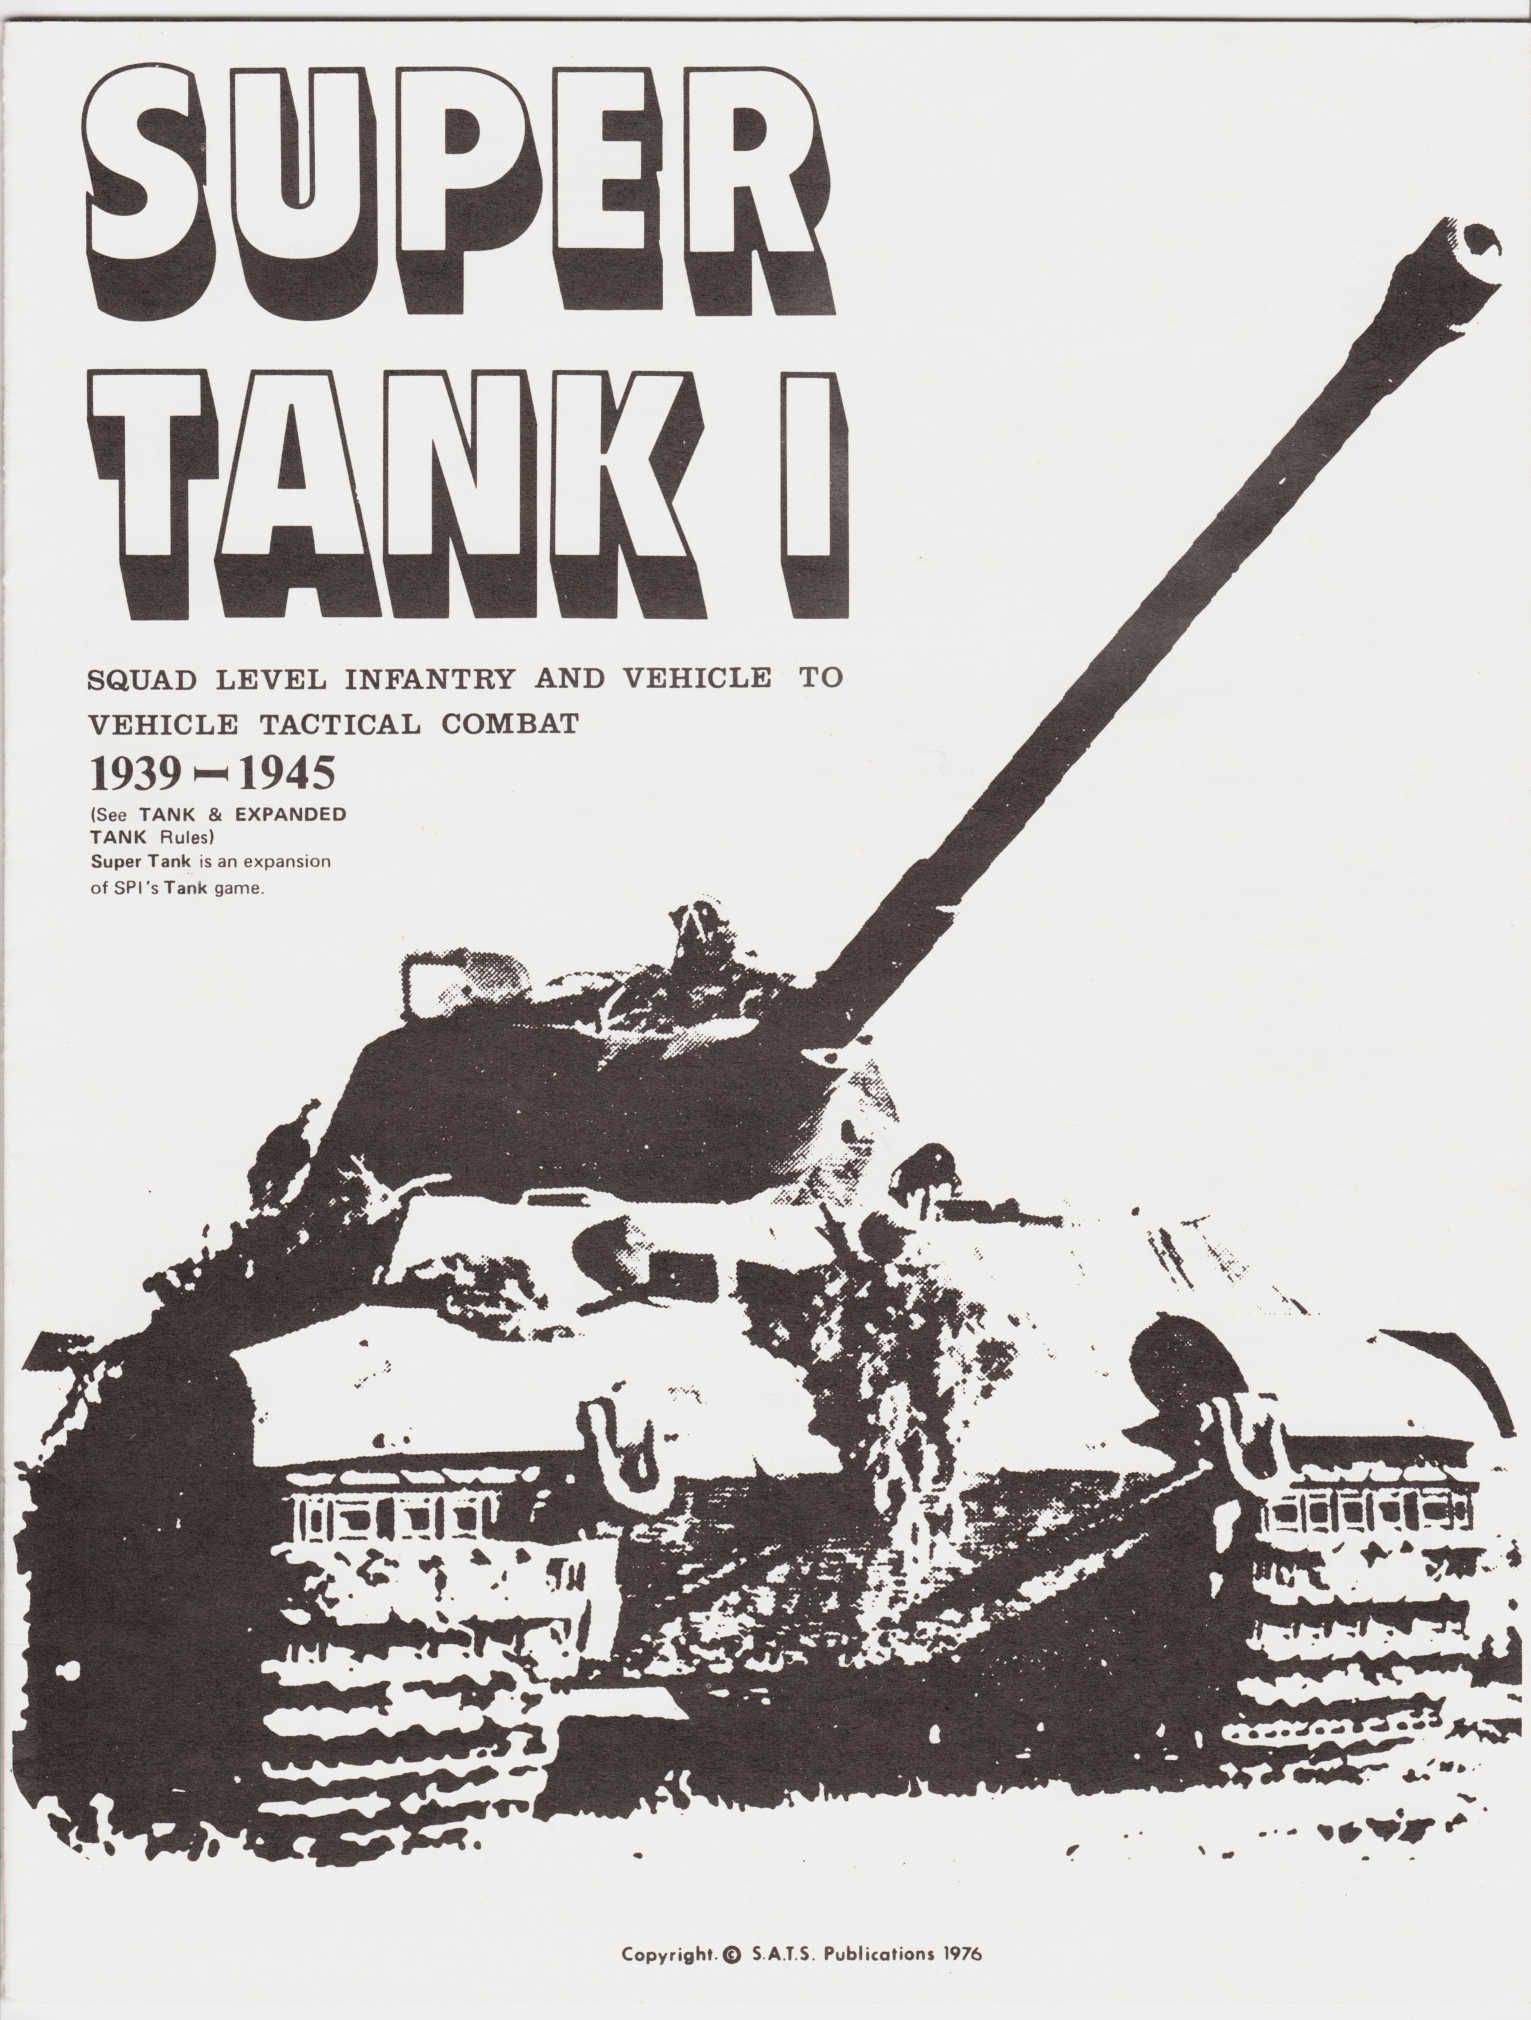 Super Tank I